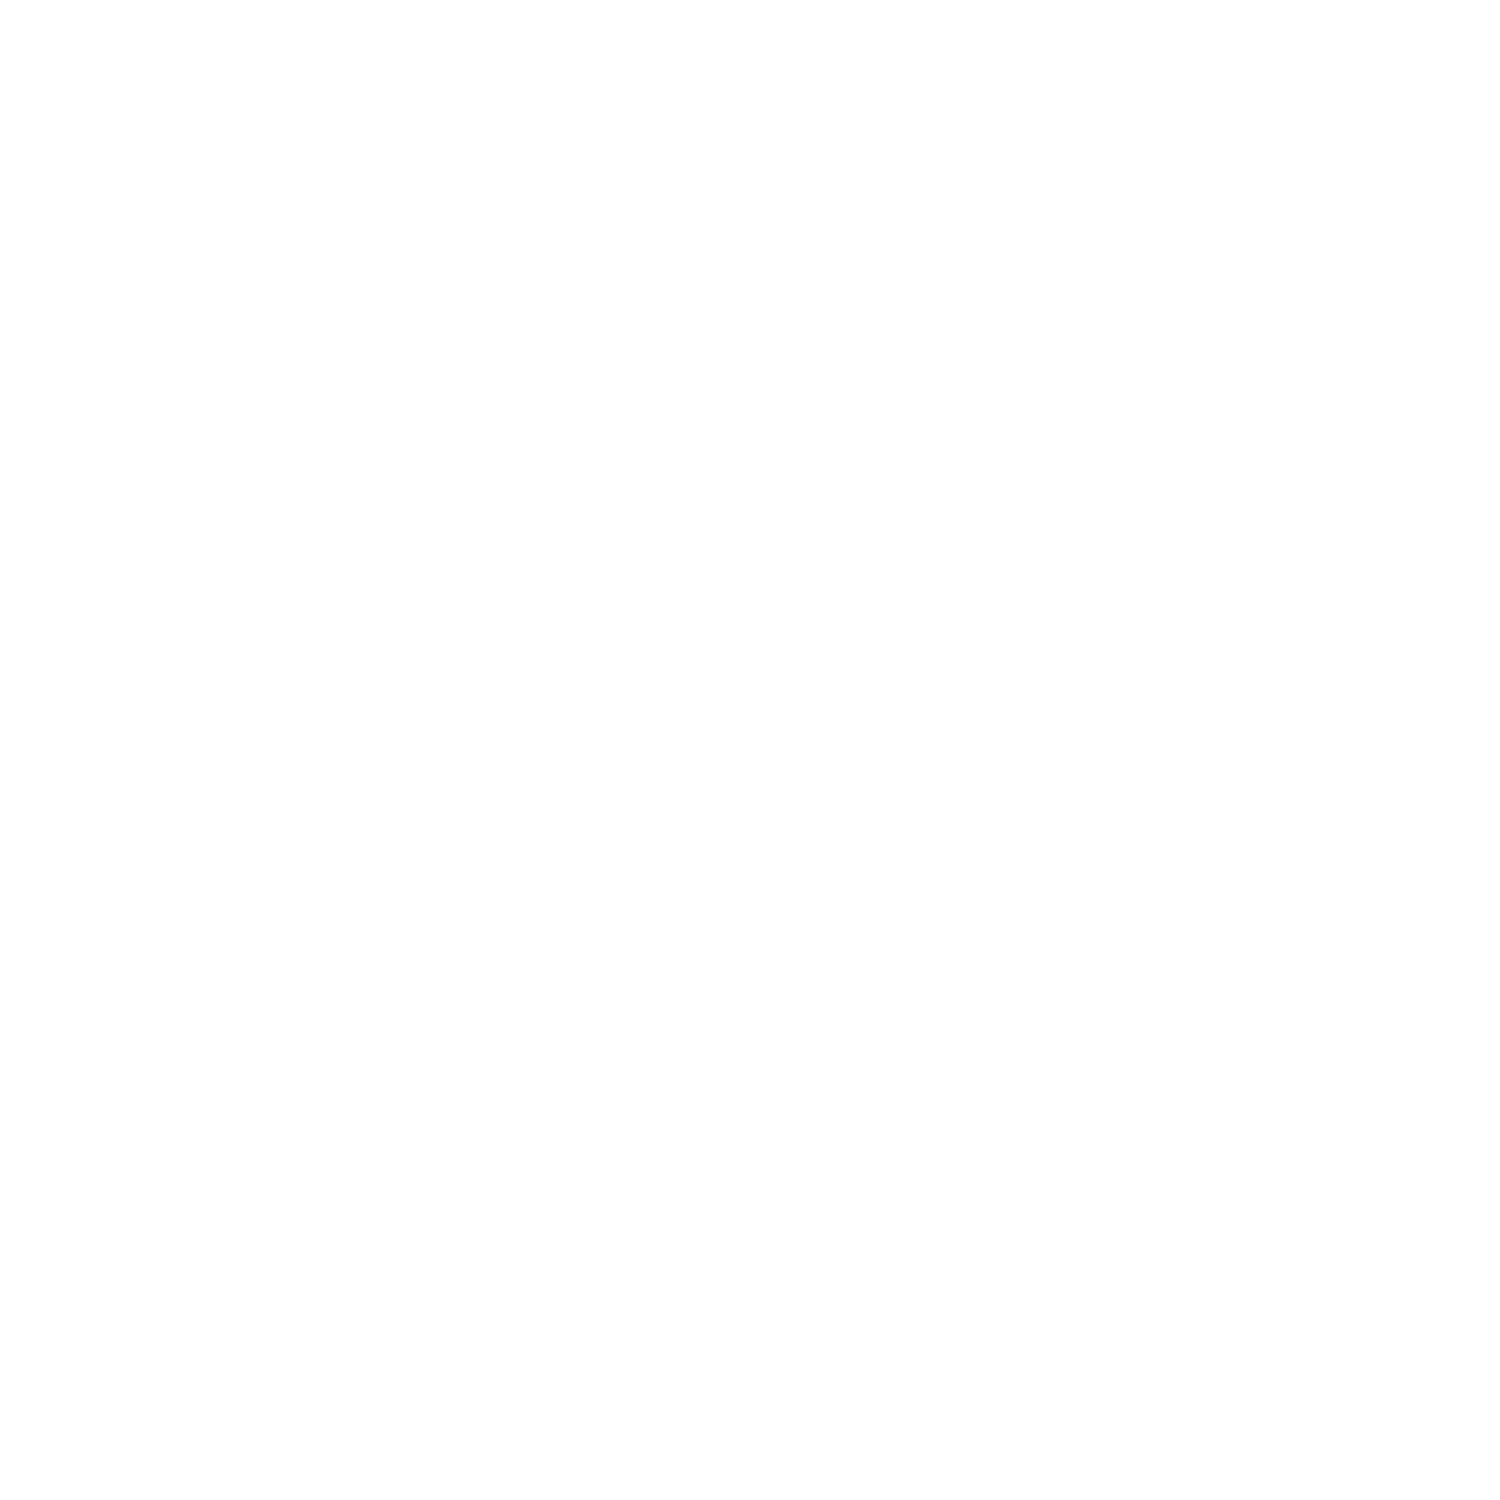 KP &amp; Co. Design Studio